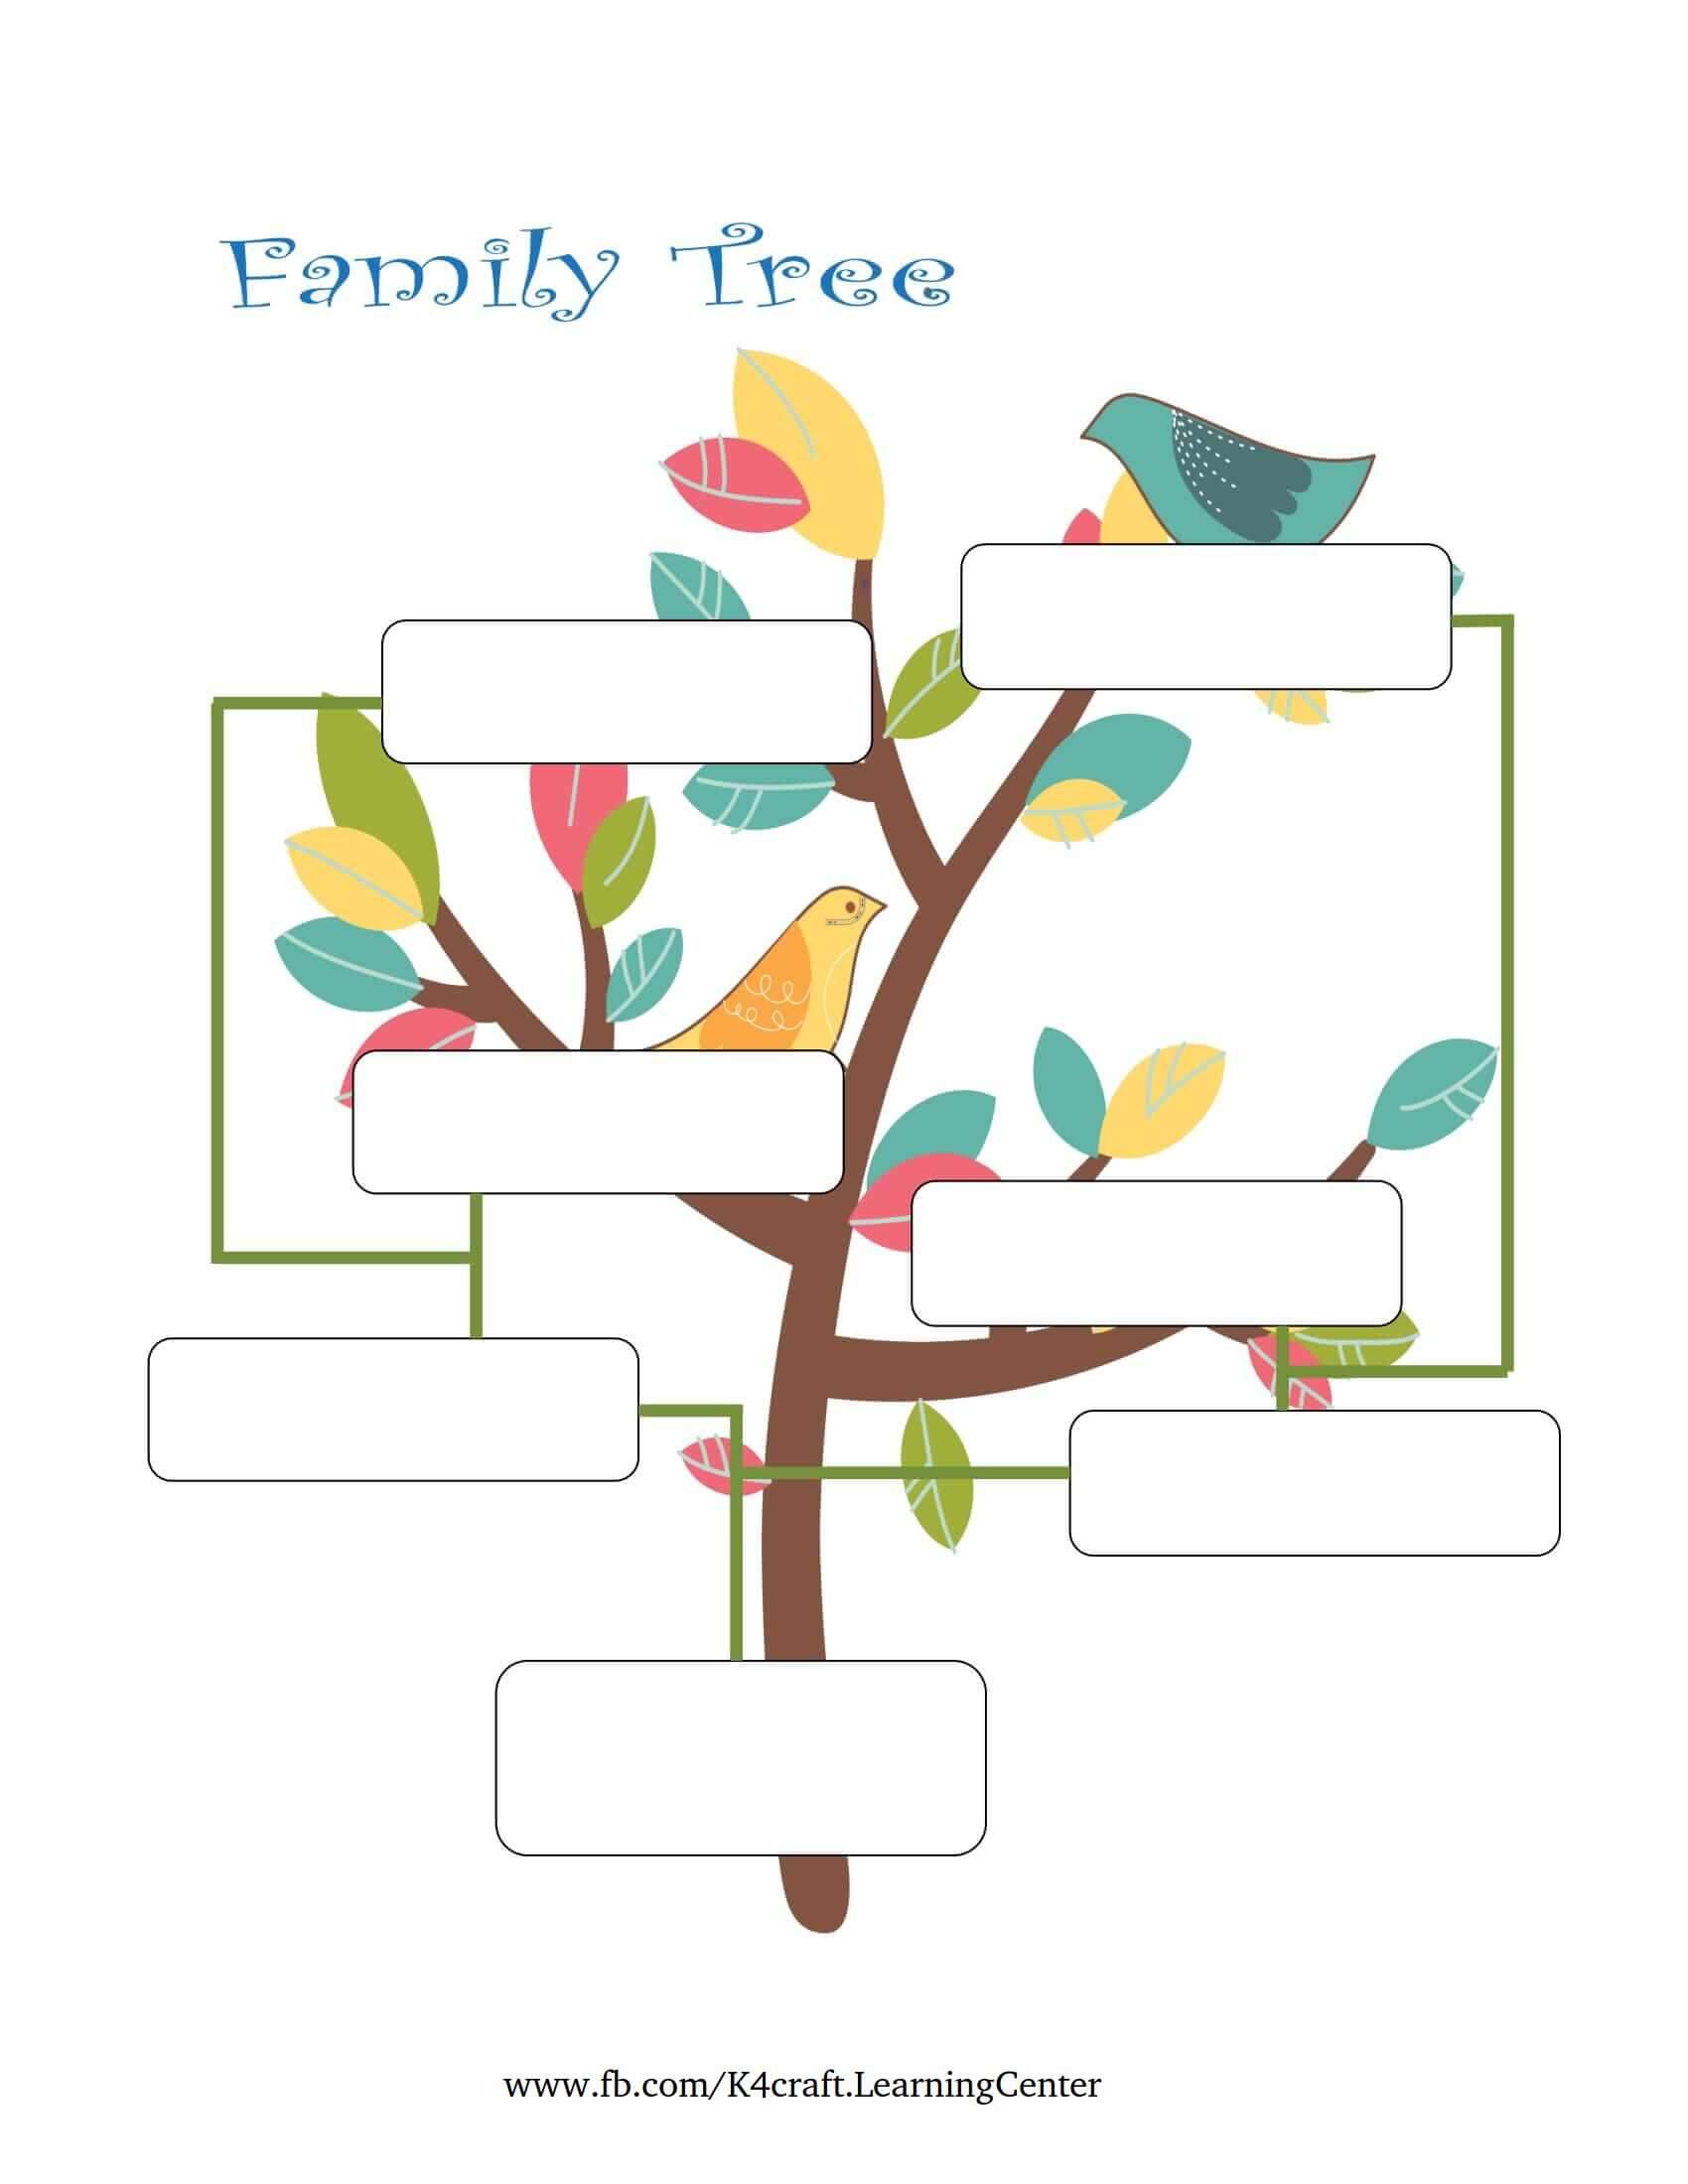 Easy Family Tree Template For Kids - Family Tree Designs for Children 